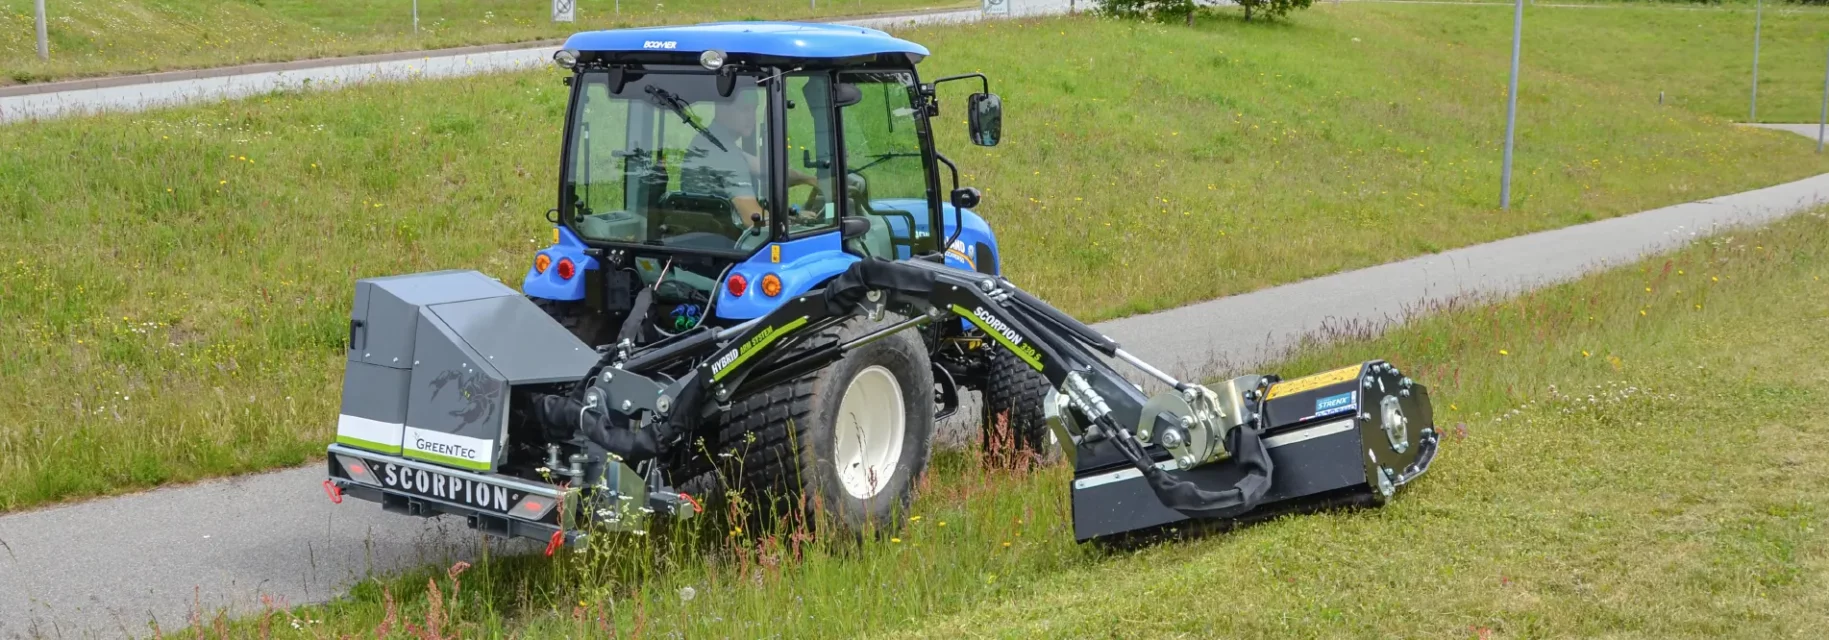 Hydraulisk slagleklipper monteret på lille traktor